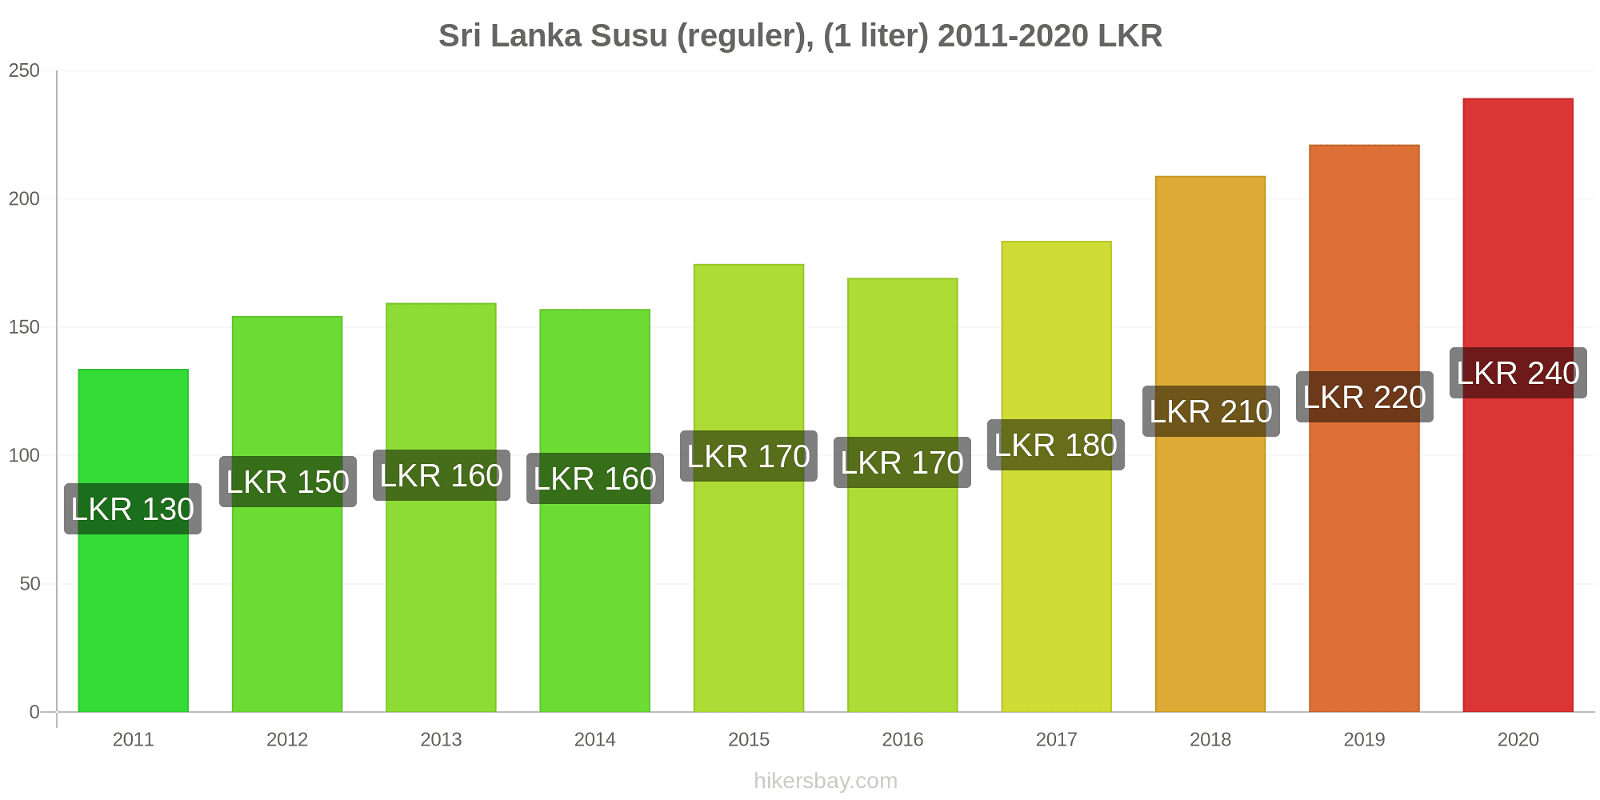 Sri Lanka perubahan harga Susu (reguler), (1 liter) hikersbay.com